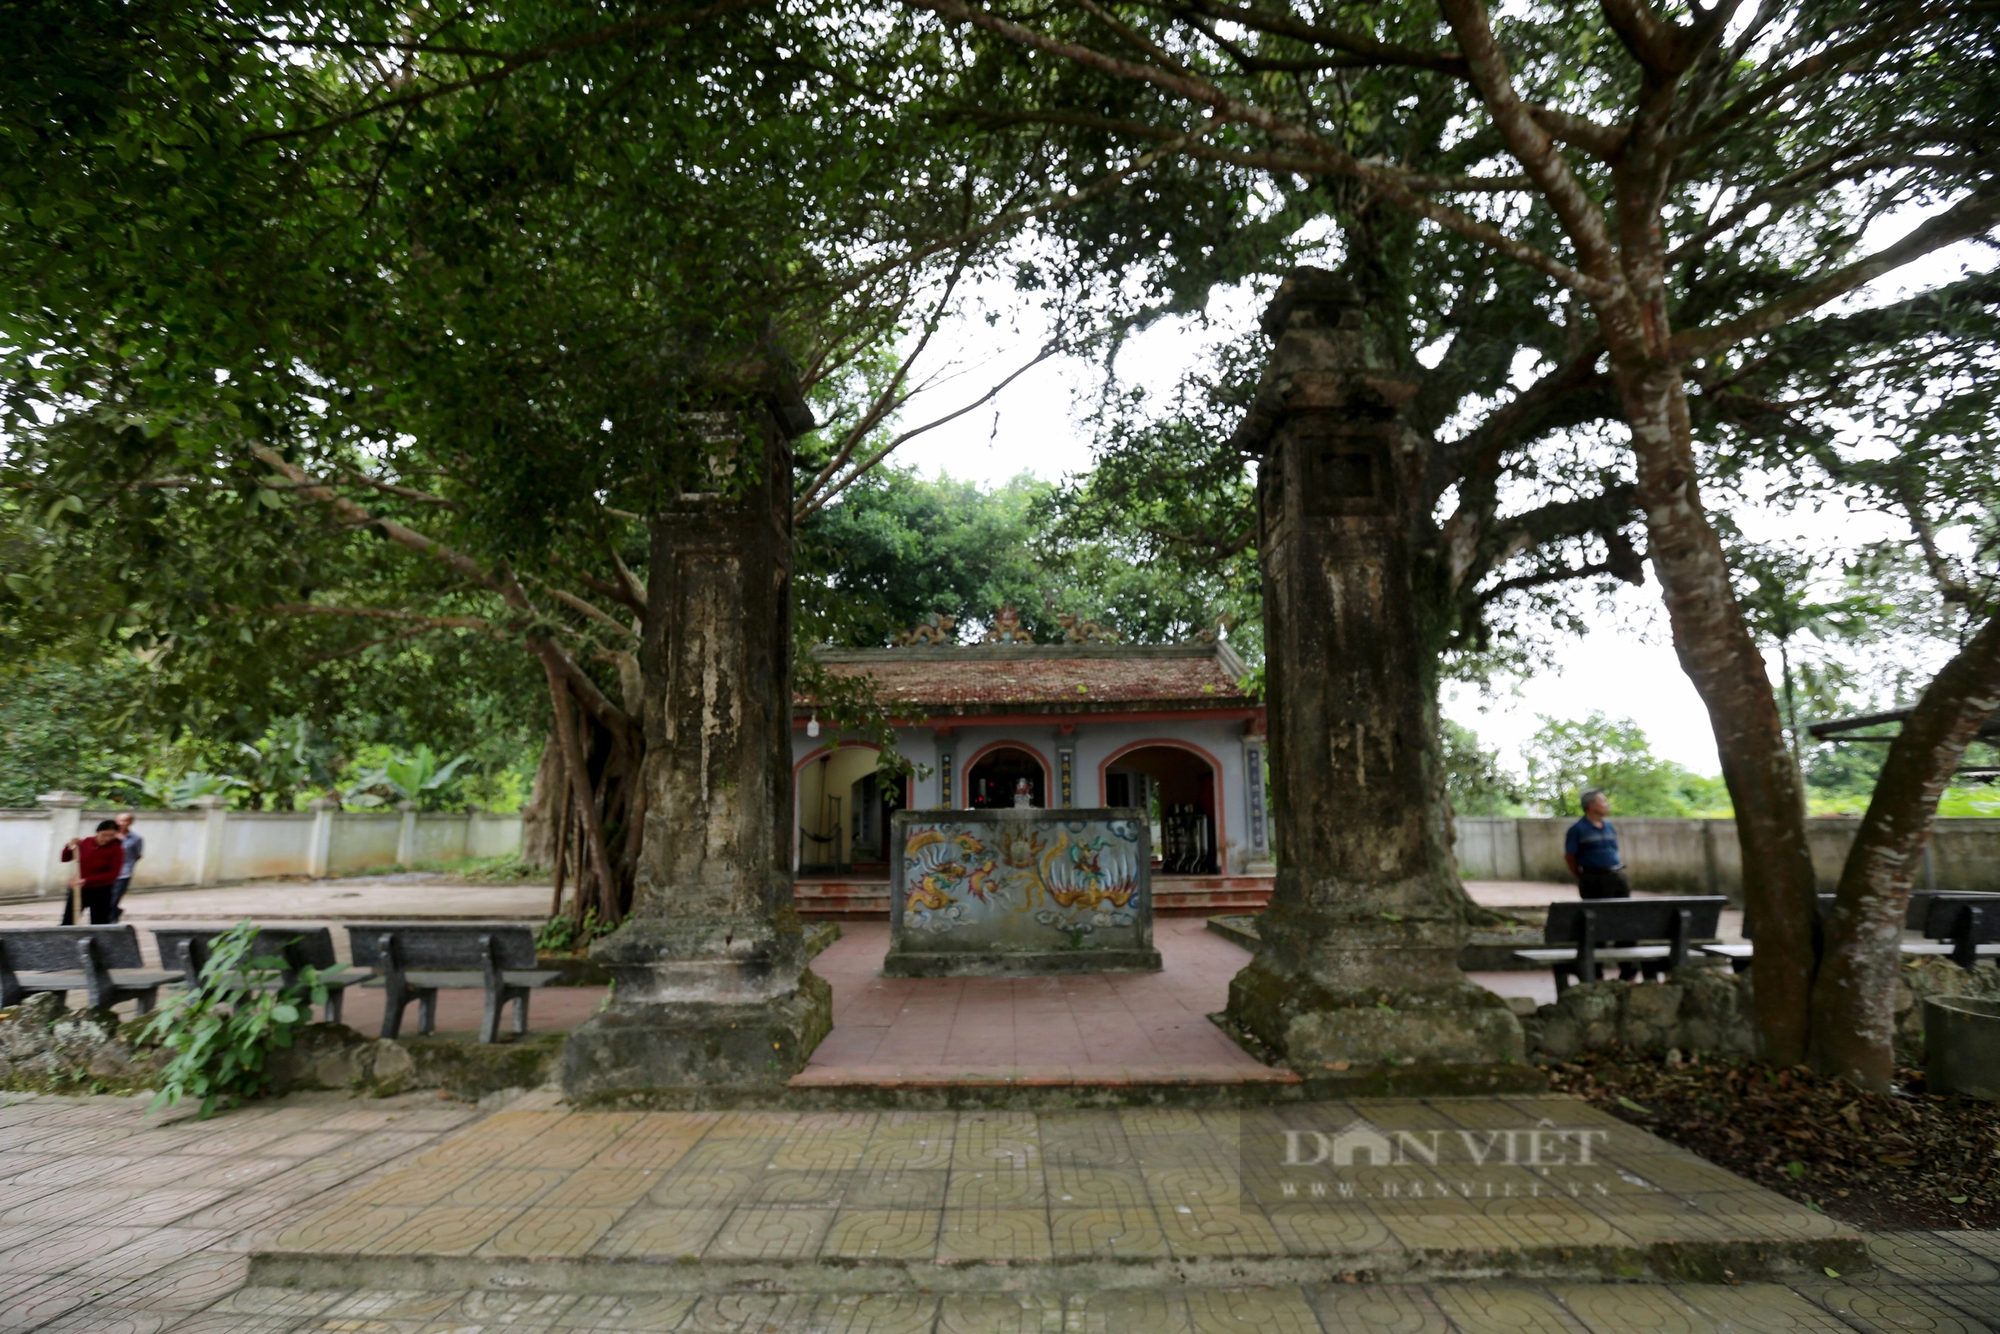 Ở một thị trấn của Hà Tĩnh có 2 cây cổ thụ 600 tuổi "trấn" cửa đền Cương Quốc Công Nguyễn Xí- Ảnh 3.